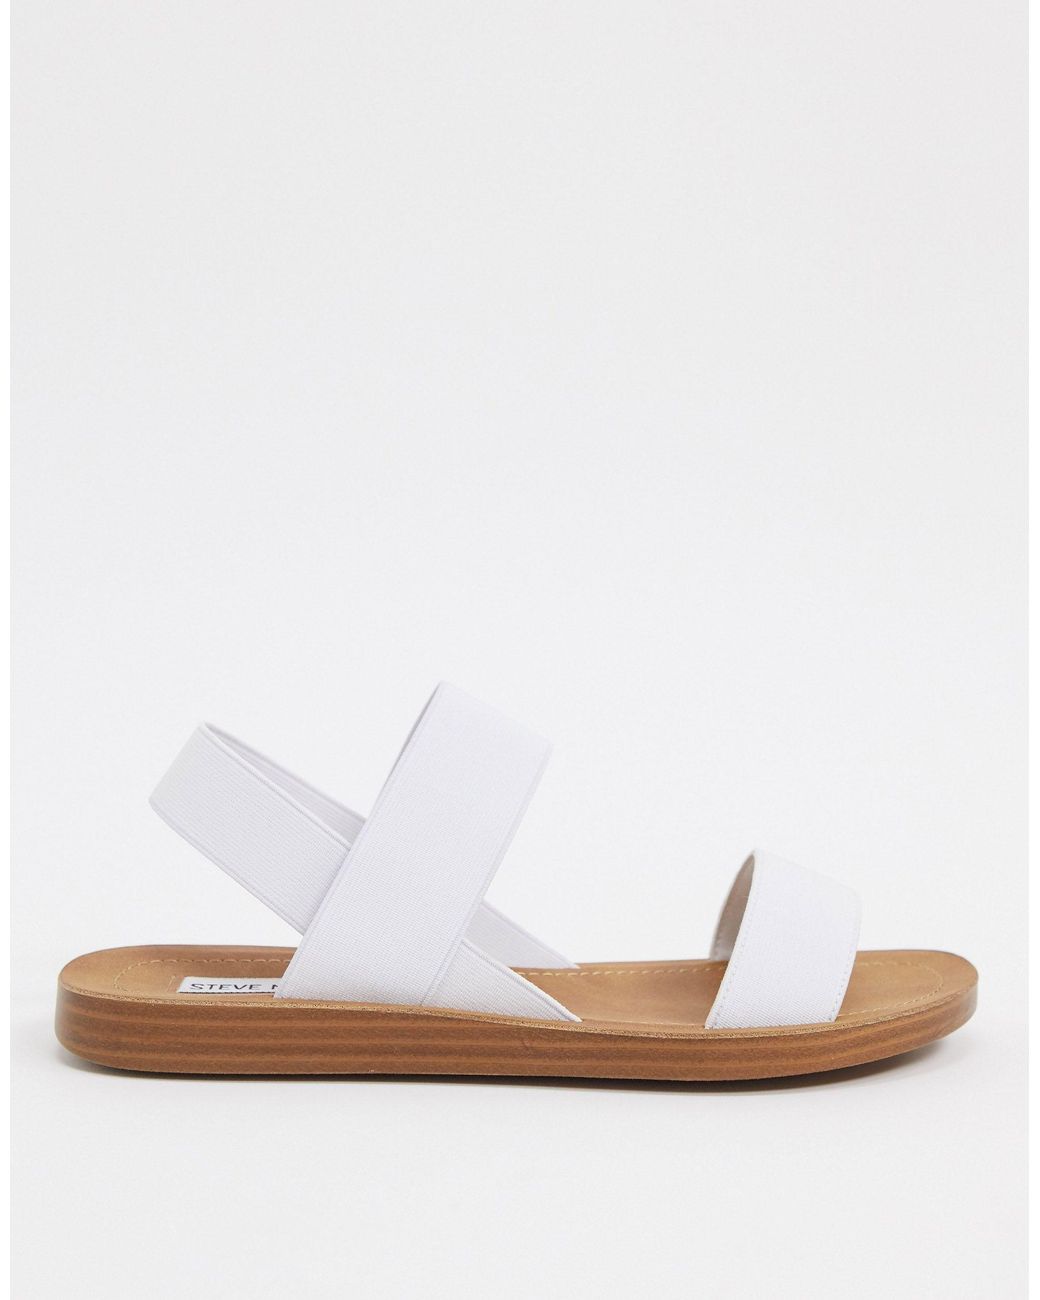 Steve Madden Roma Flat Sandals in White | Lyst